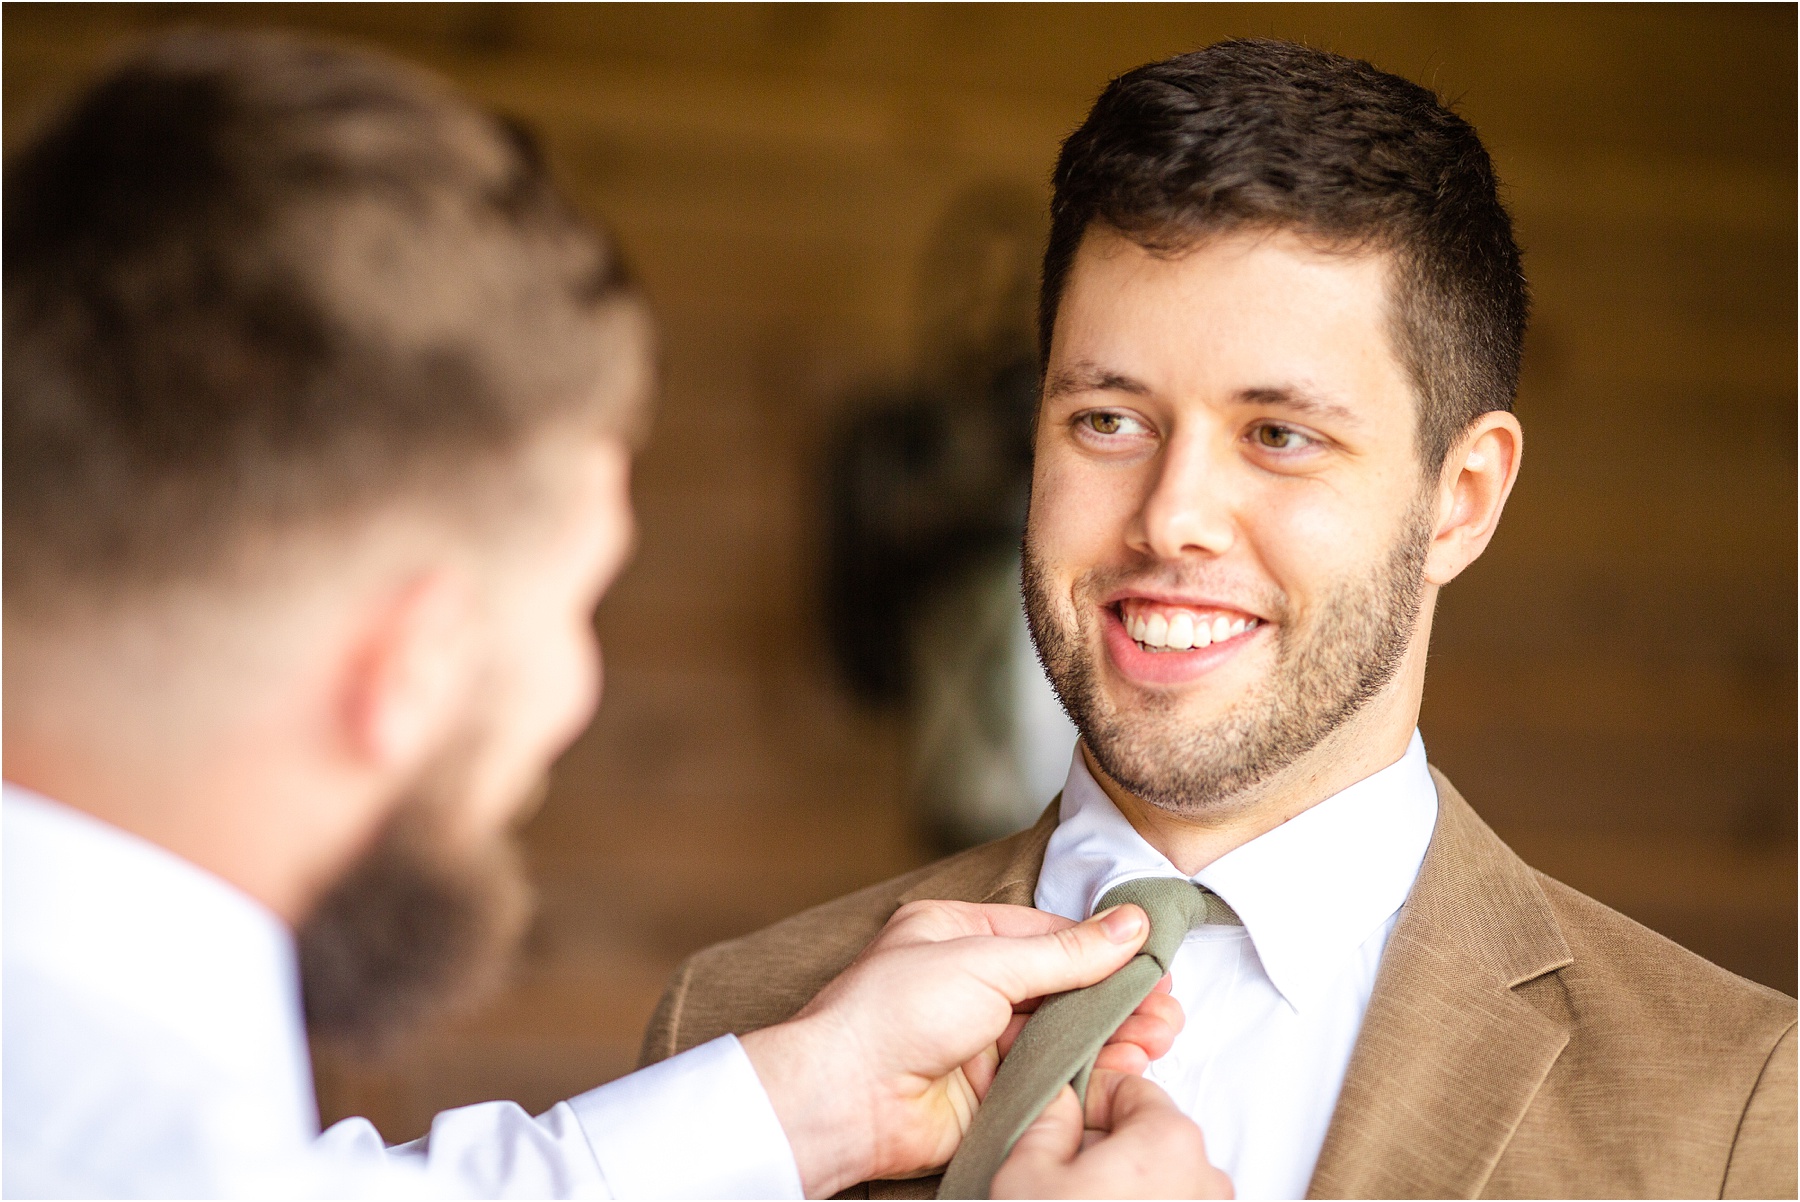 Friend straightening tie of groom